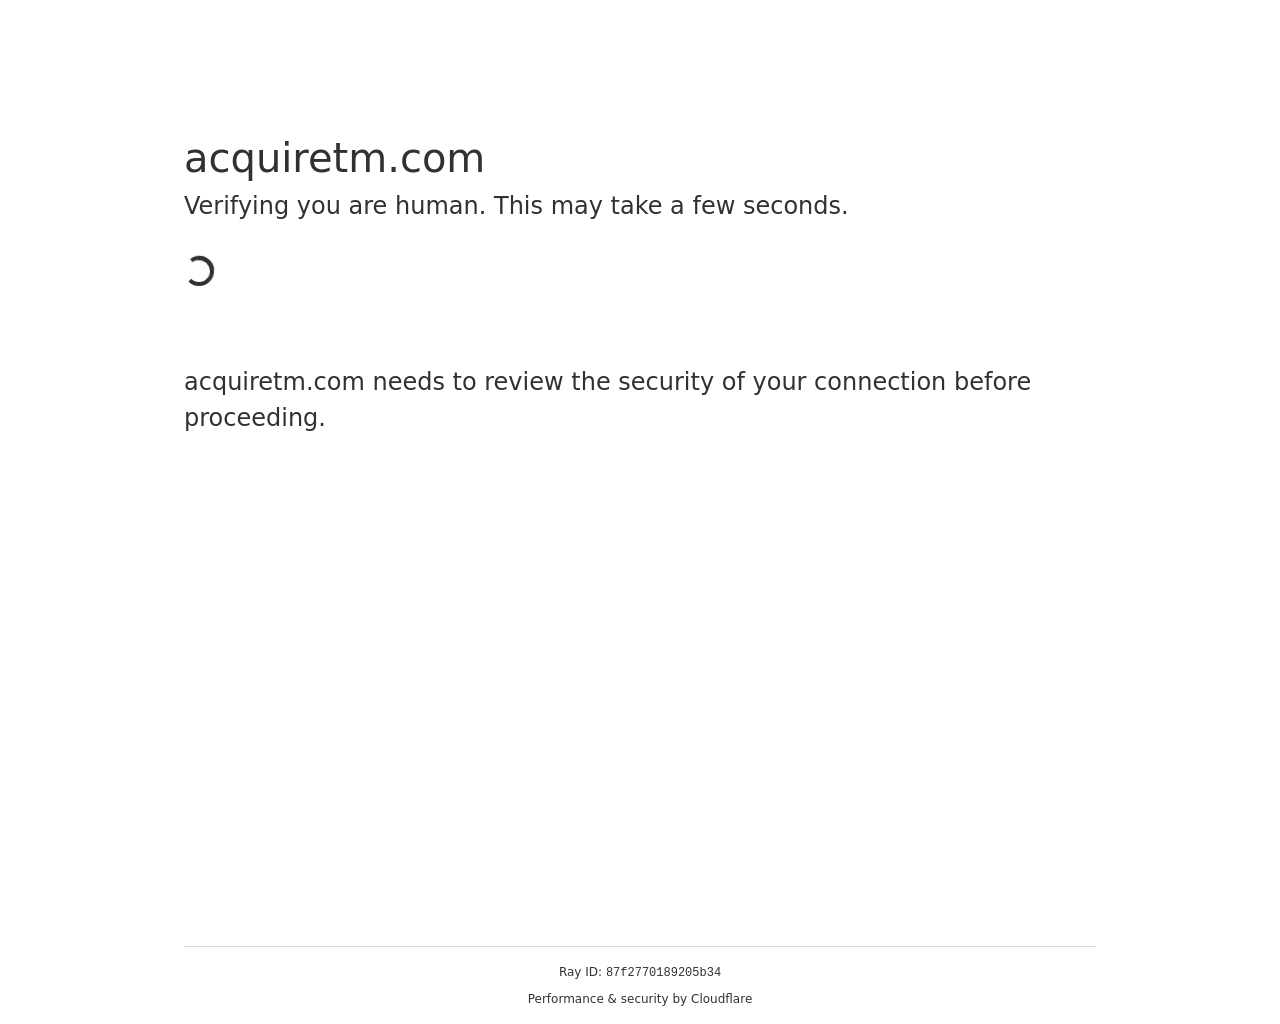 acquiretm.com